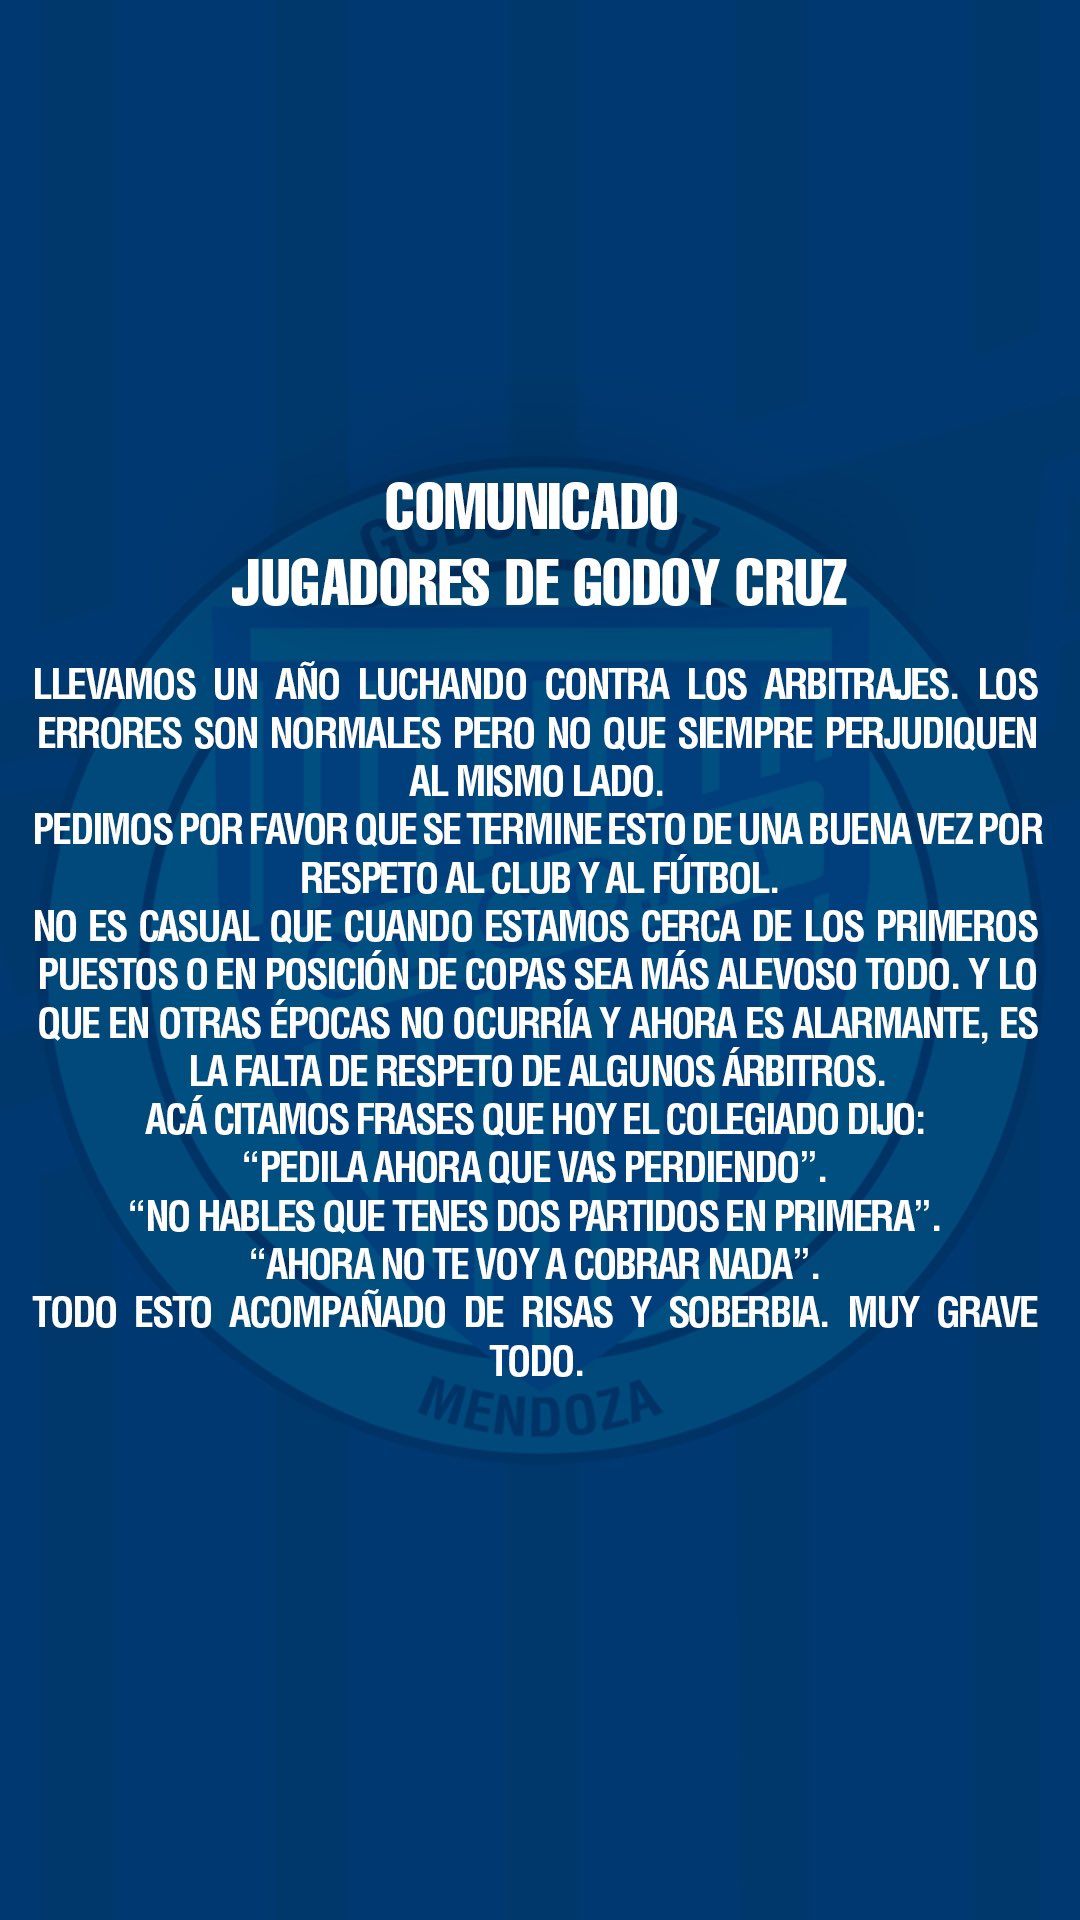 Comunicado Godoy Cruz